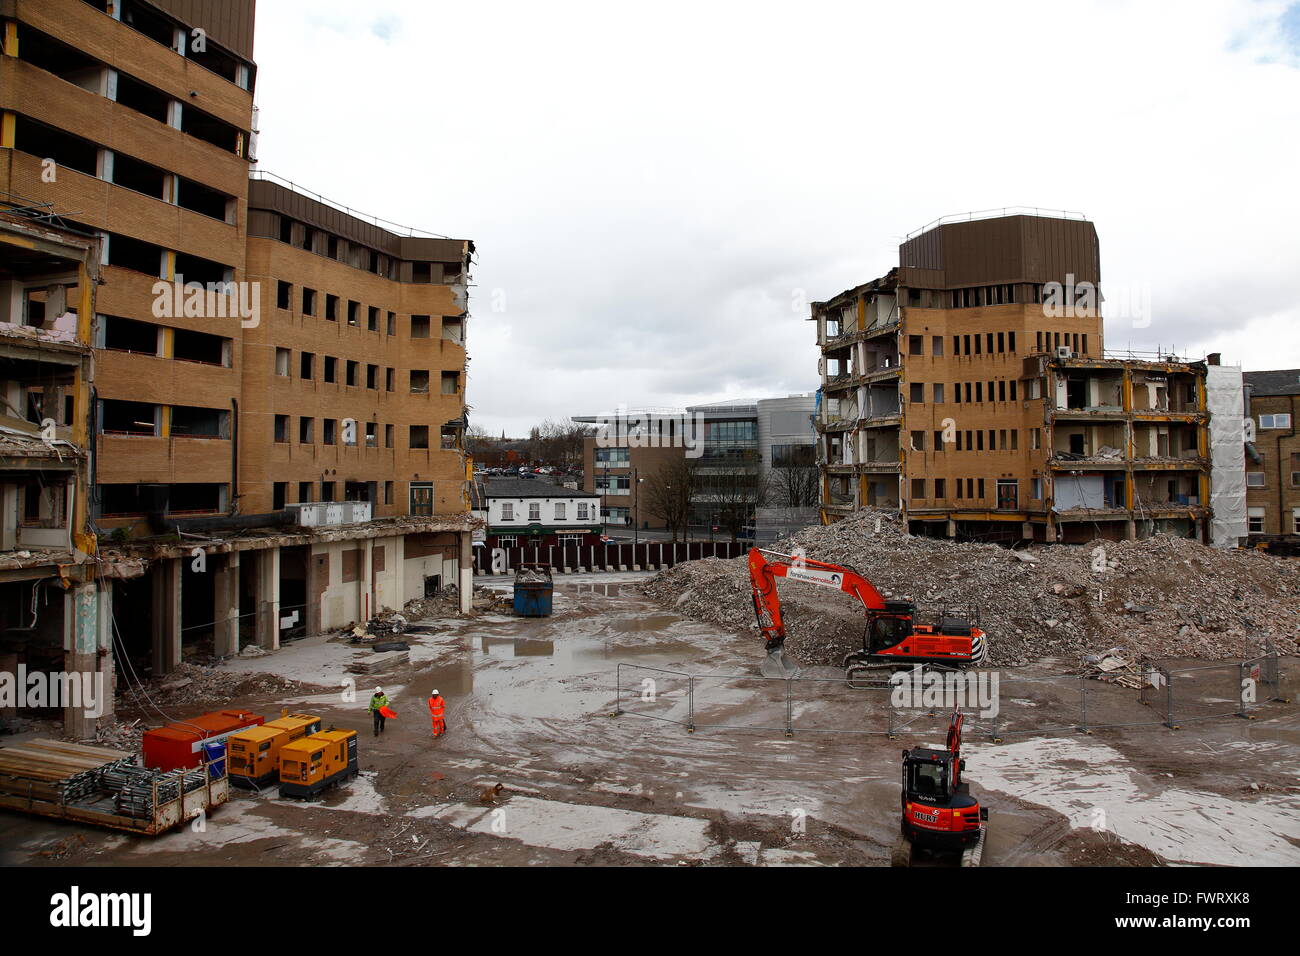 Una vista de la demolición del edificio del Centro Administrativo Tameside que está siendo demolido como parte de la 'Visión' Tameside Foto de stock